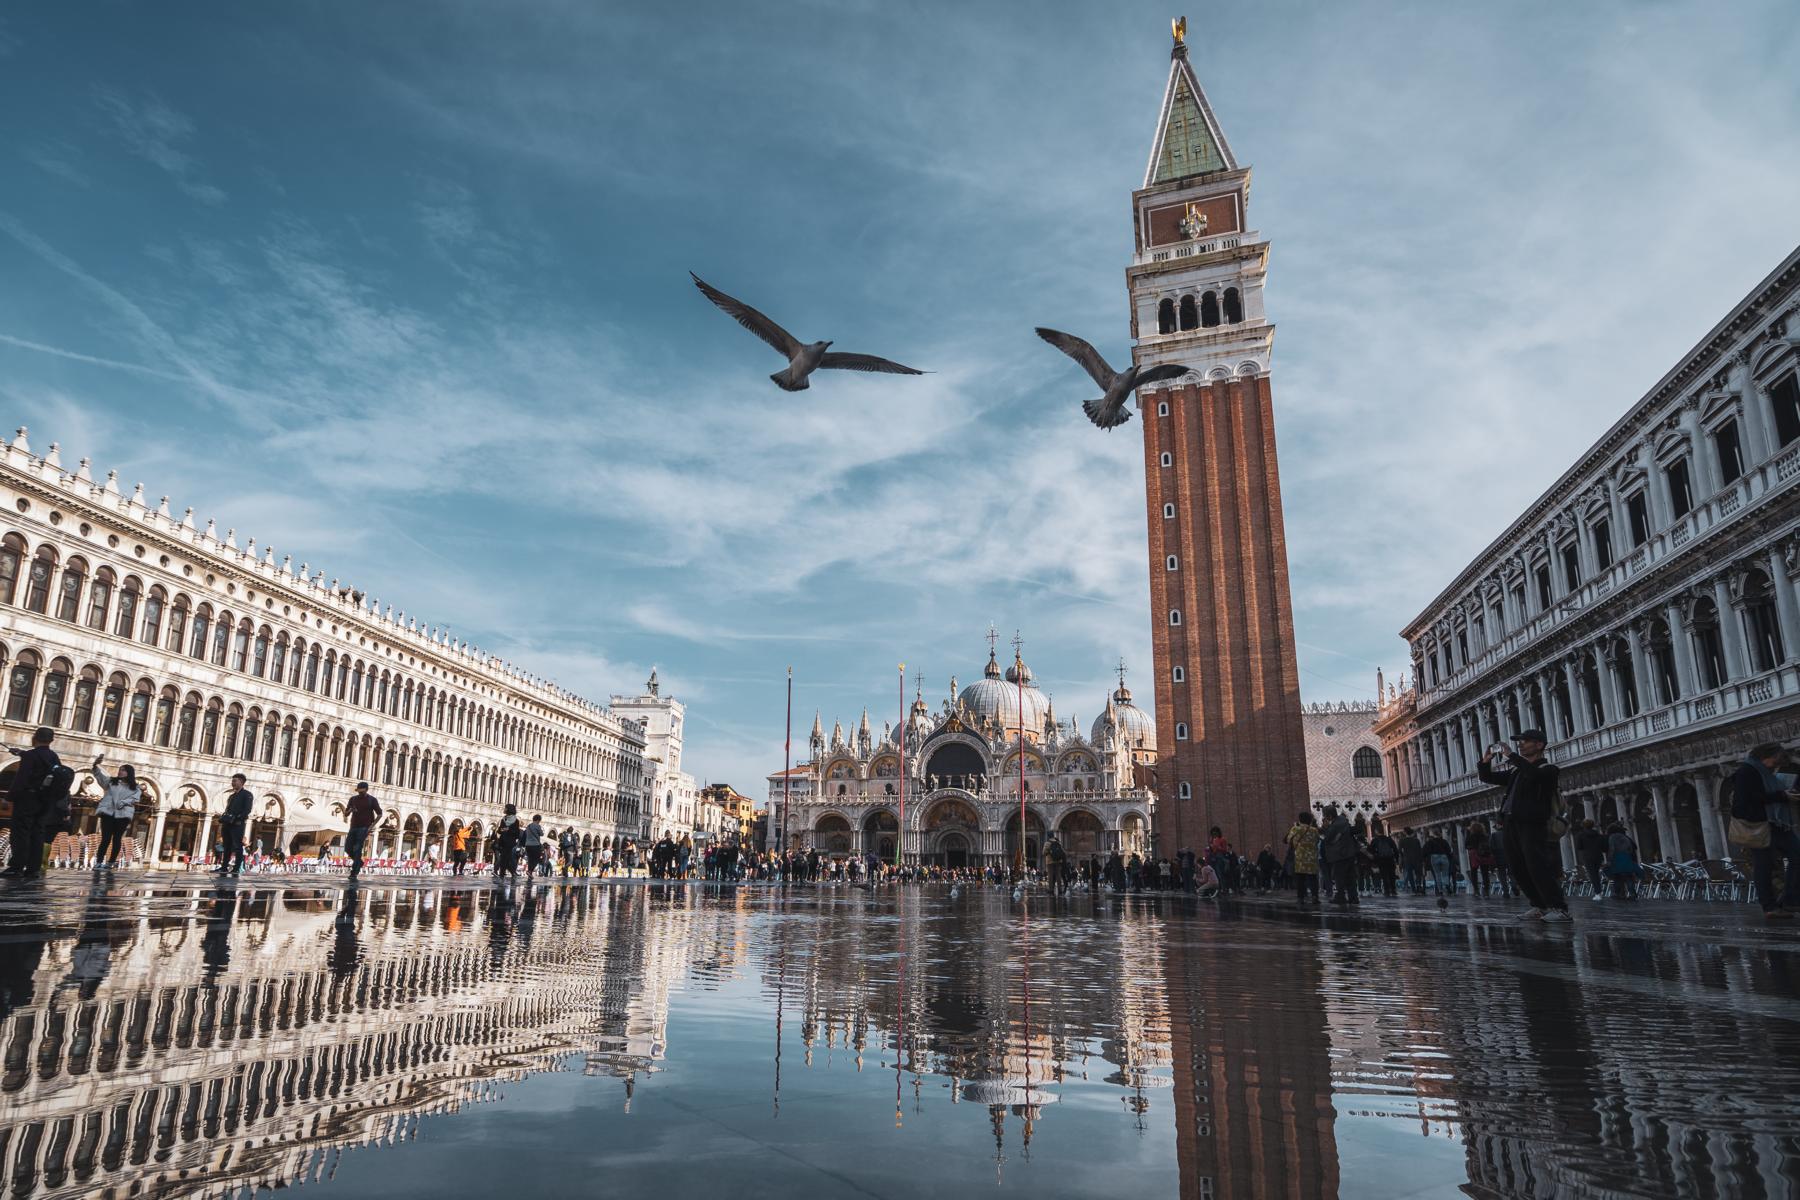 Campanile di San Marco: Die 1.000-jährige Geschichte hinter dem höchsten Glockenturm in Venedig